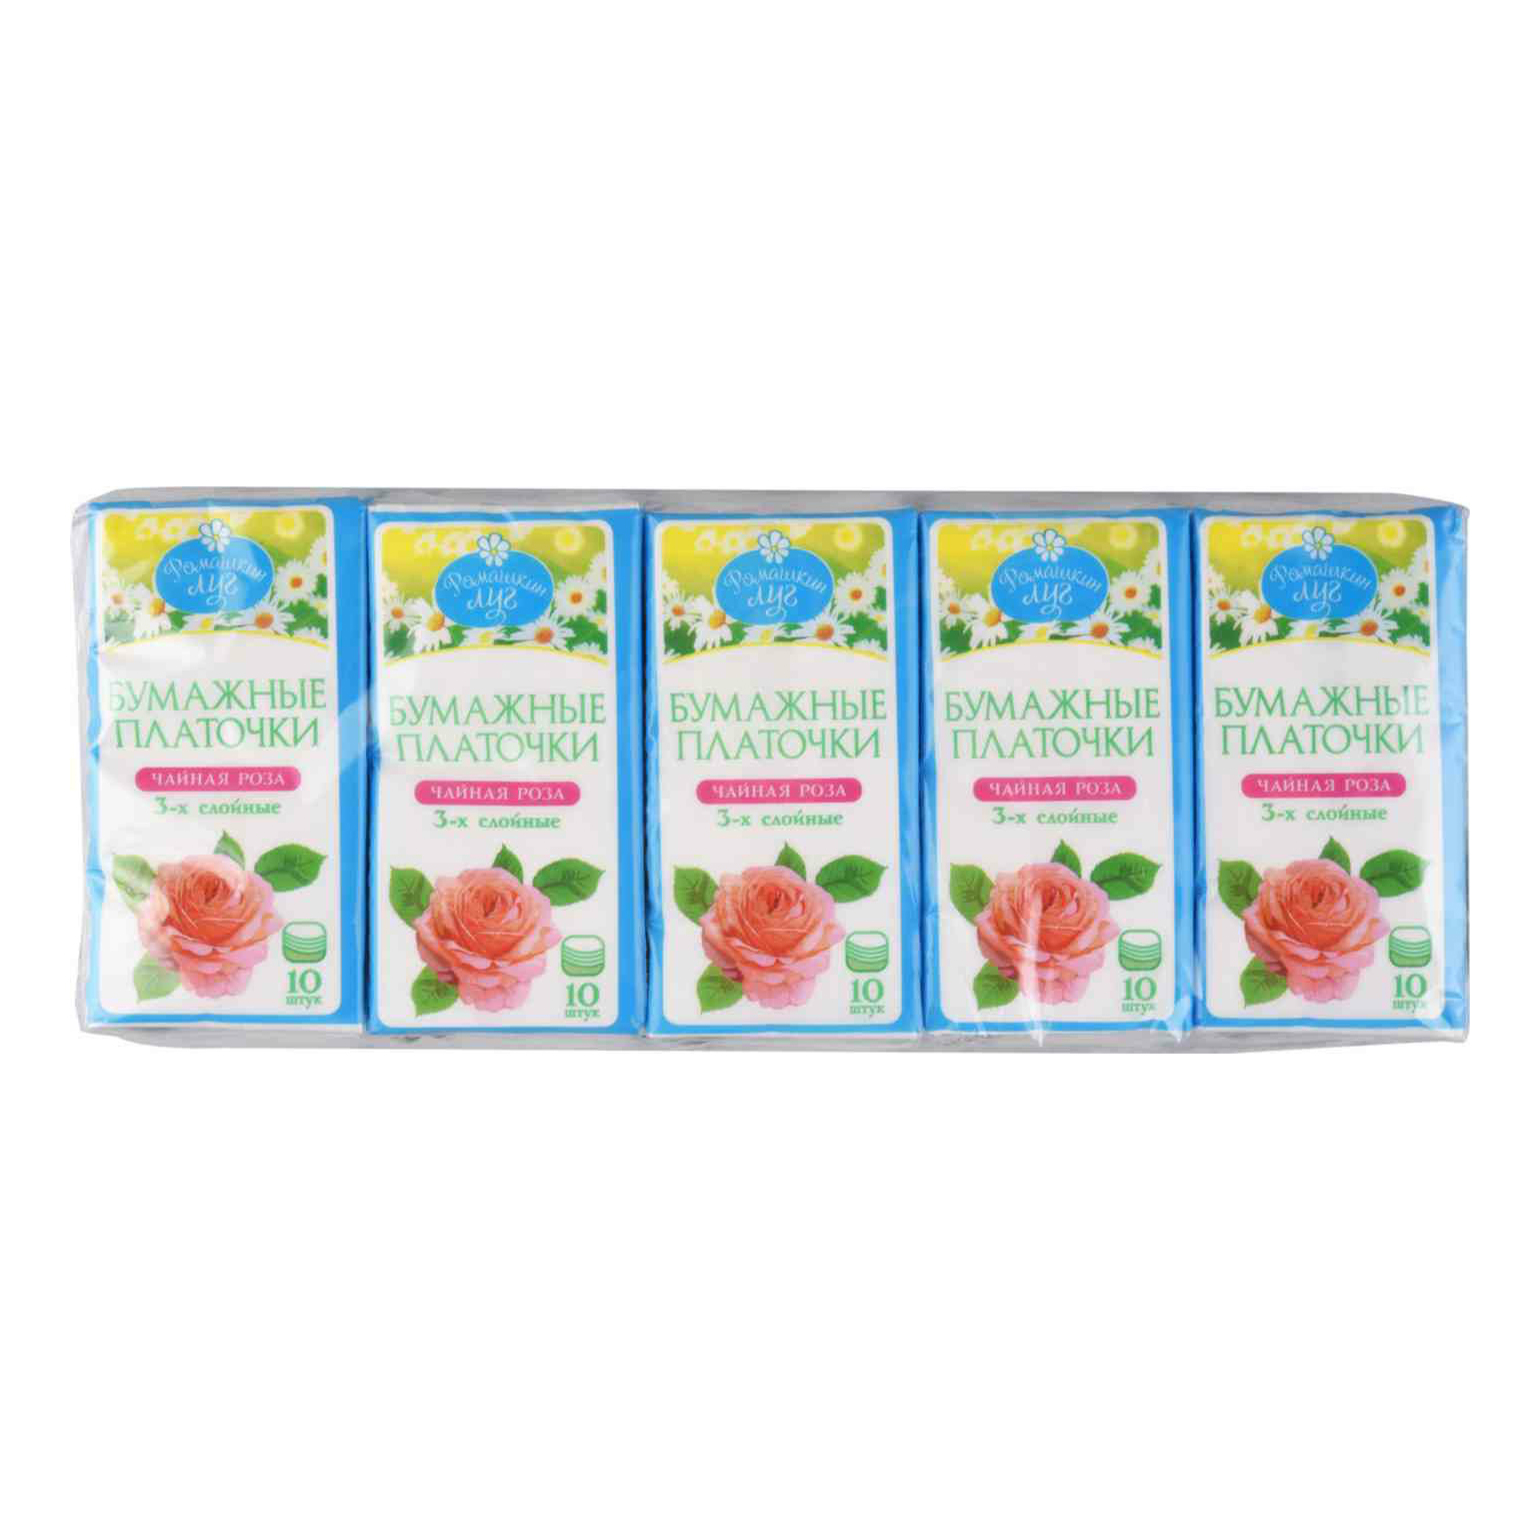 Платочки Ромашкин луг Чайная роза бумажные трехслойные 10 шт платочки бумажные amra с ароматом лилии 10шт